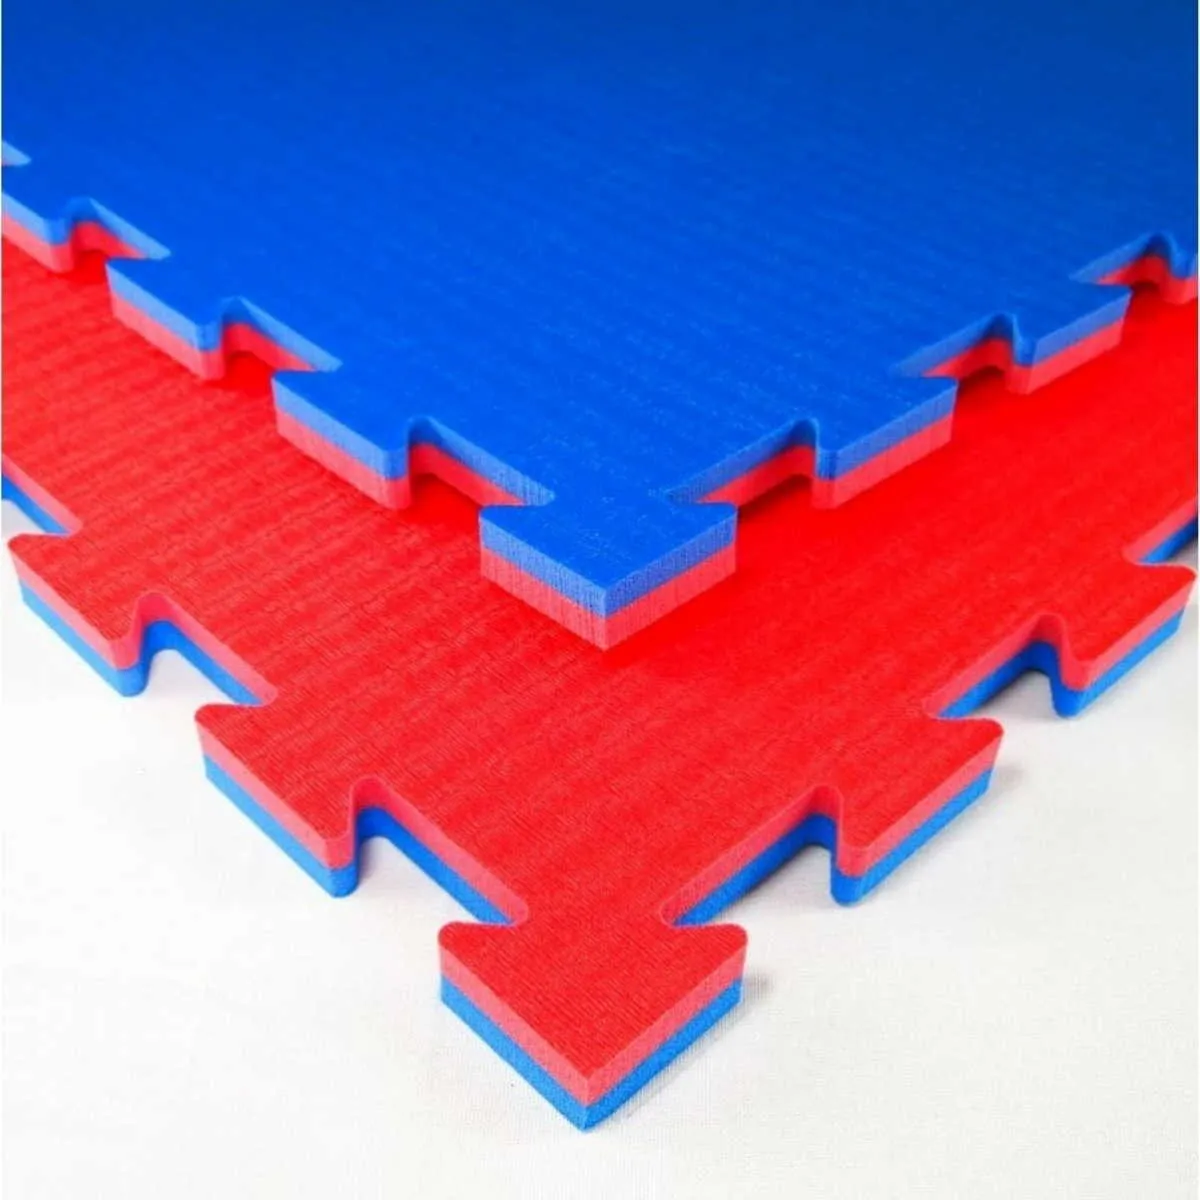 Esterilla para artes marciales Tatami K20L rojo/azul 100 cm x 100 cm x 2 cm